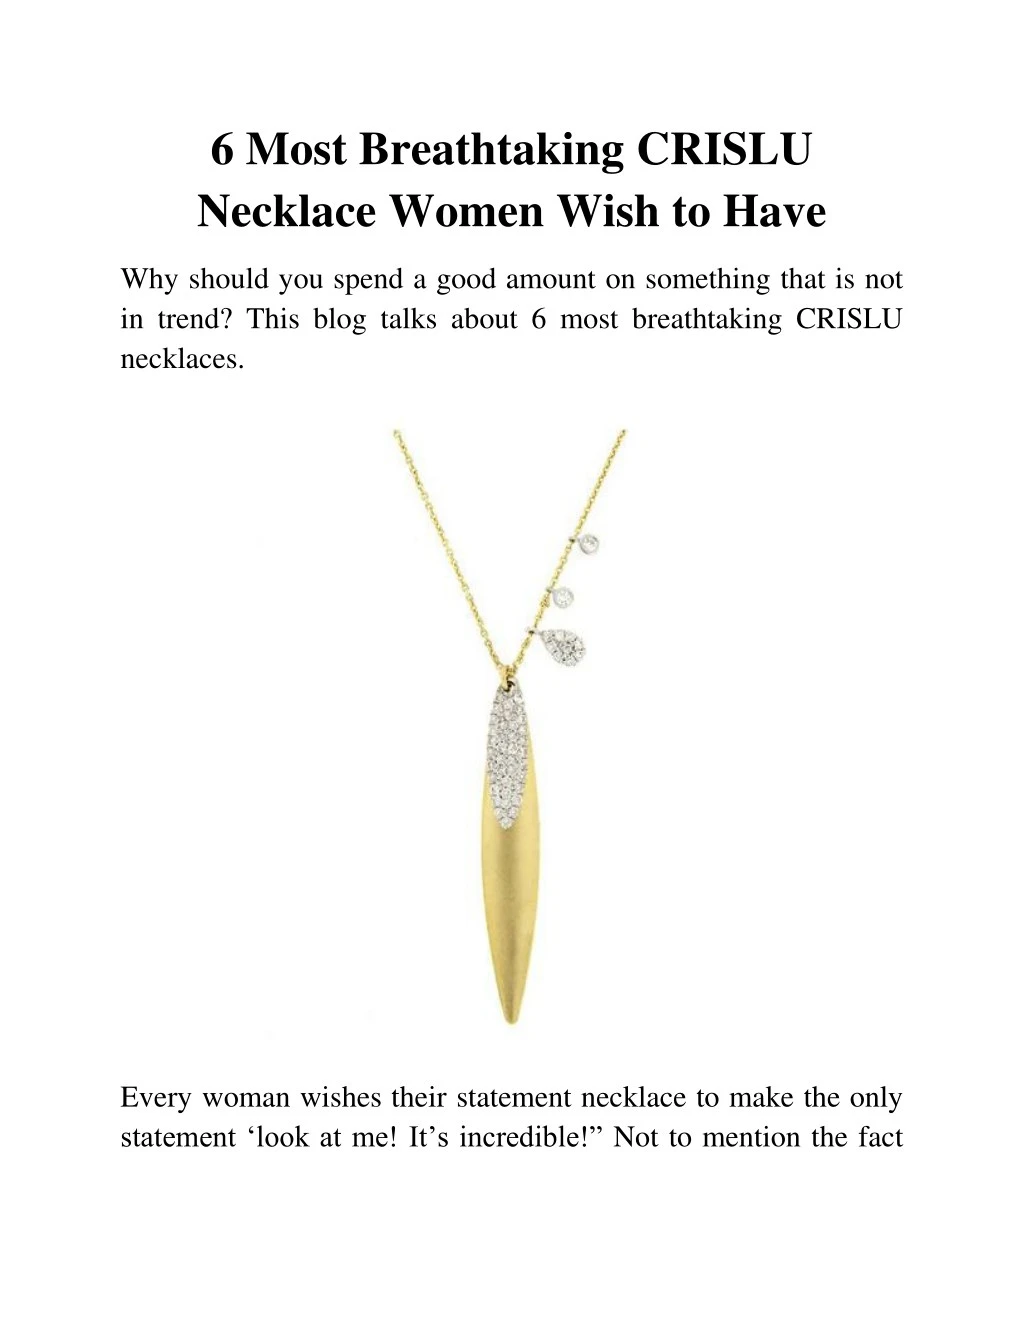 6 most breathtaking crislu necklace women wish